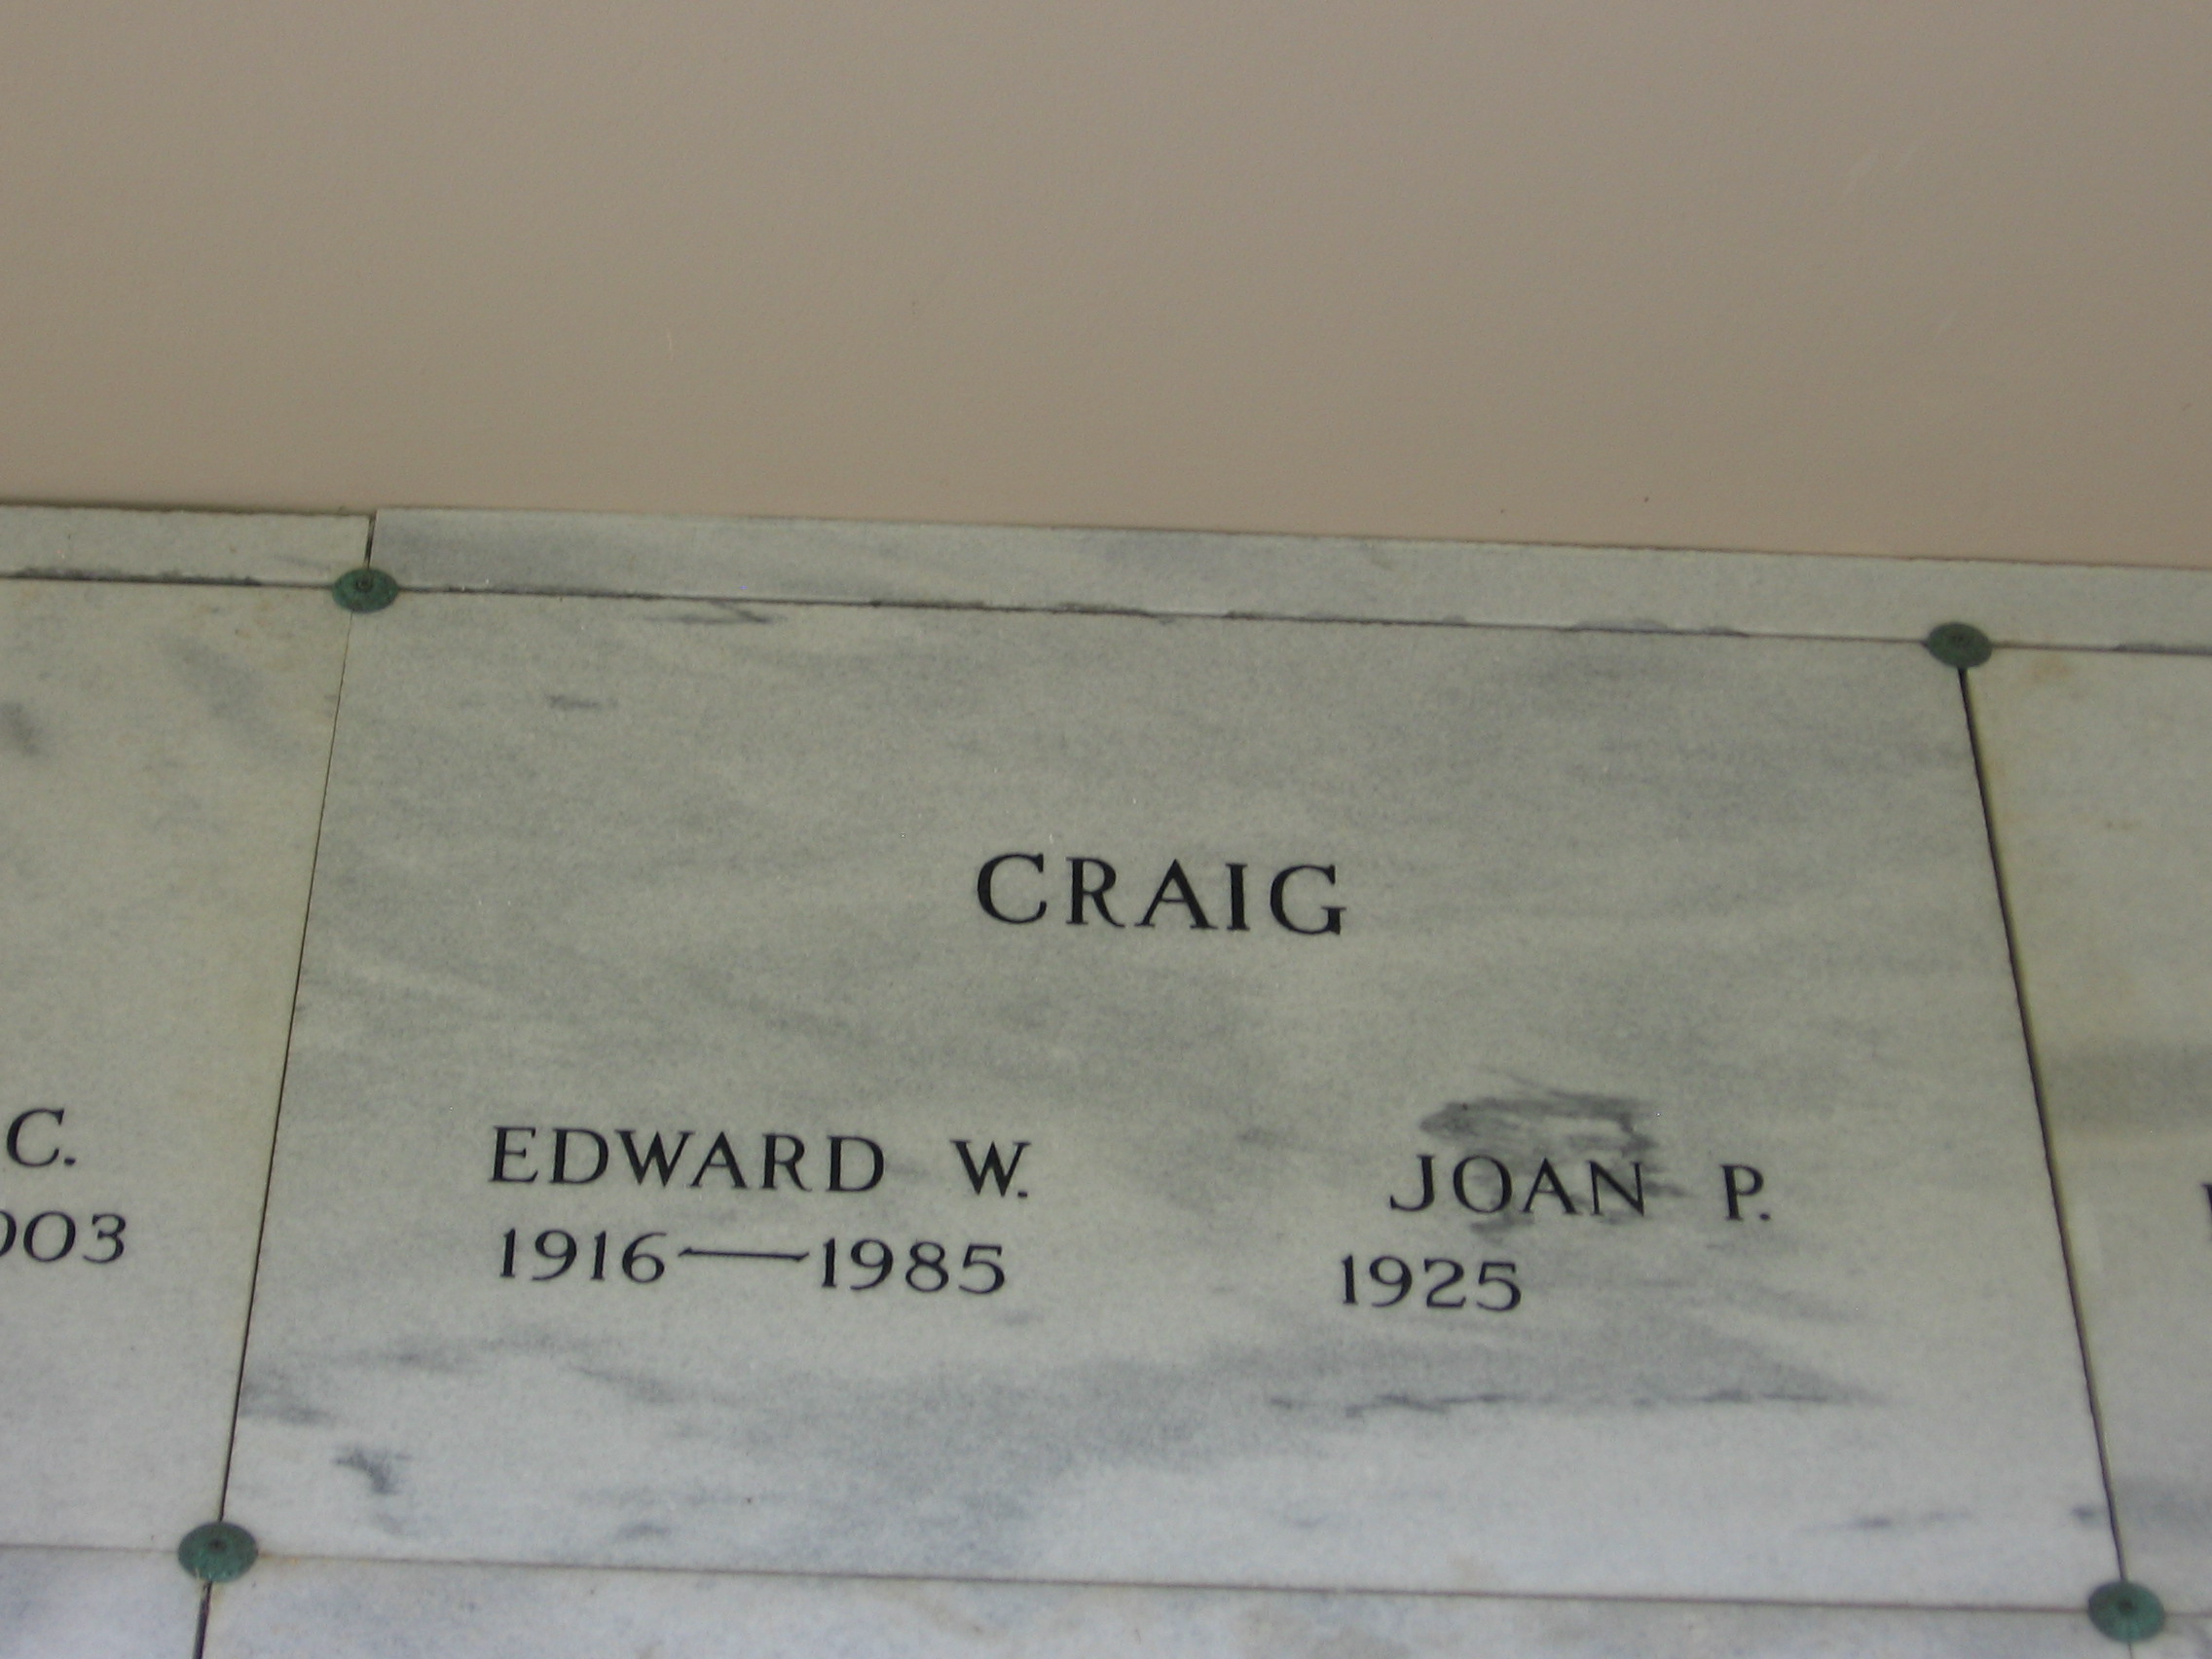 Edward W Craig